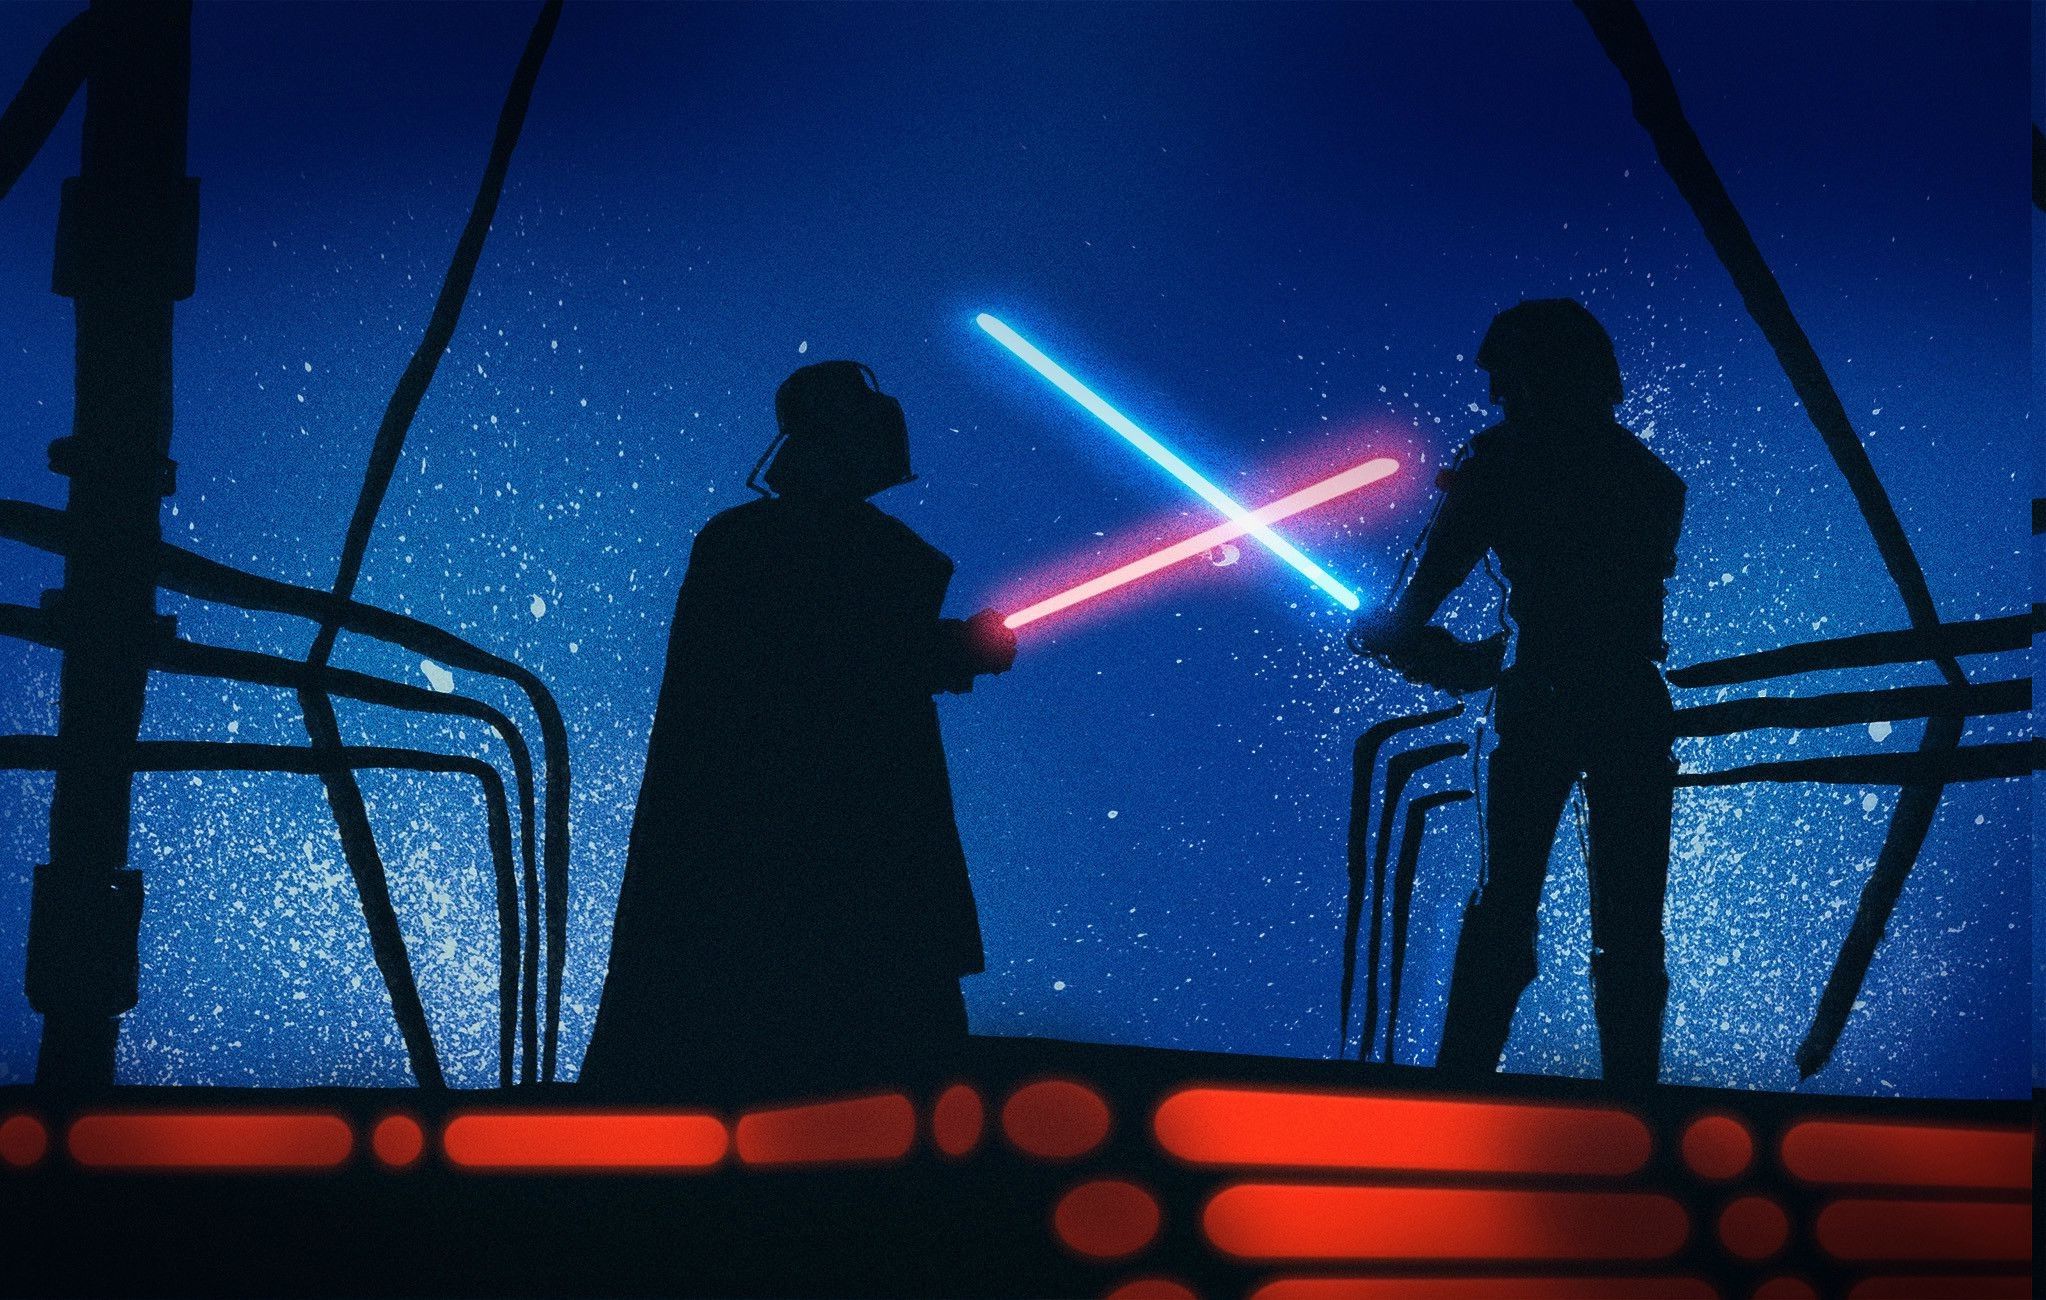 Star Wars, Luke Skywalker, Darth Vader, Anakin Skywalker Wallpaper HD / Desktop and Mobile Background